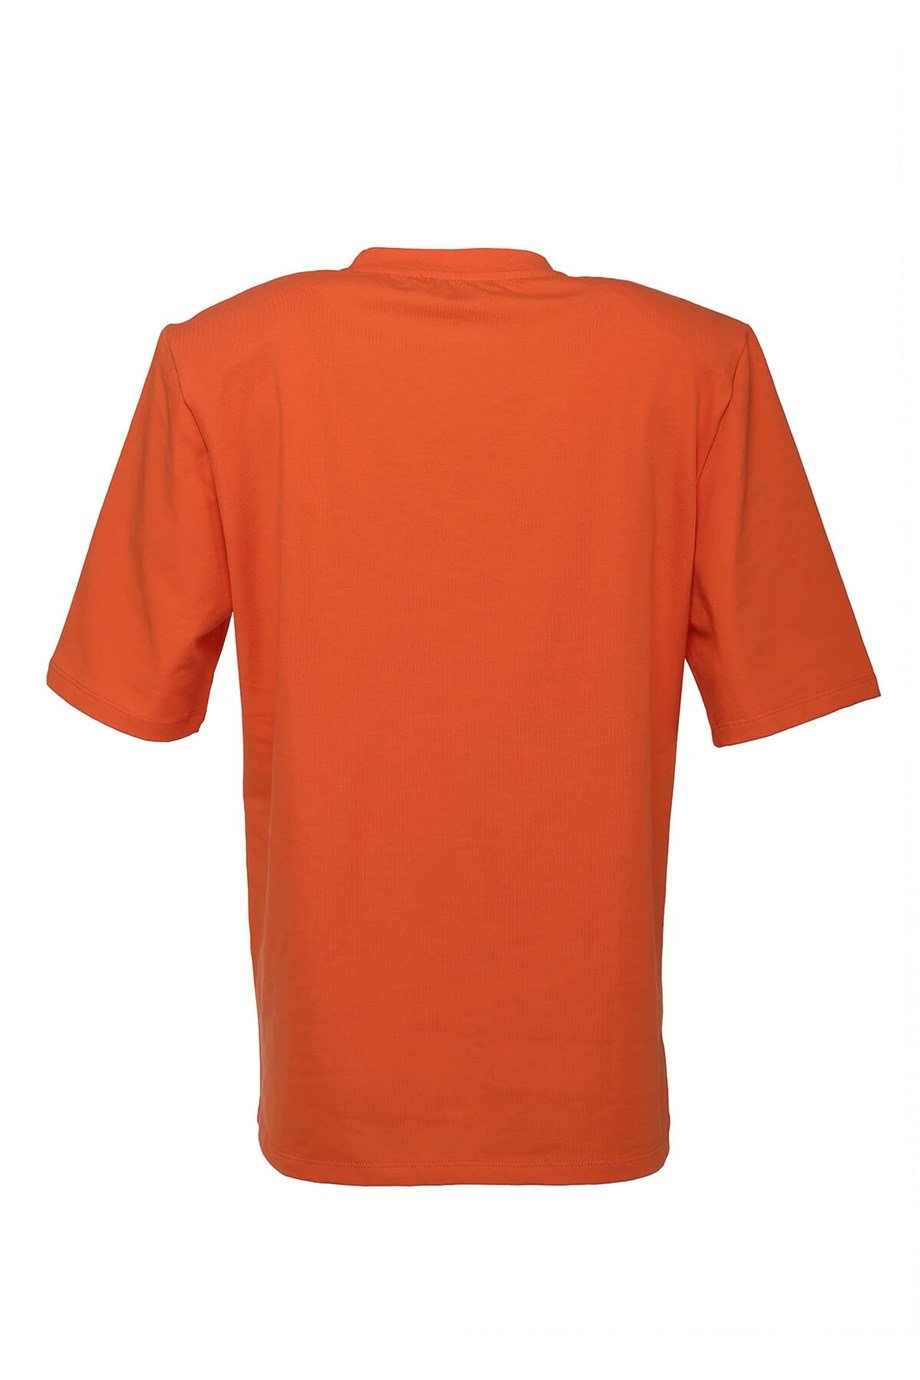 CARTNEY Omuzları Vatkalı T-Shirt Hemen İncele Cazip Fiyatı Kaçırma!